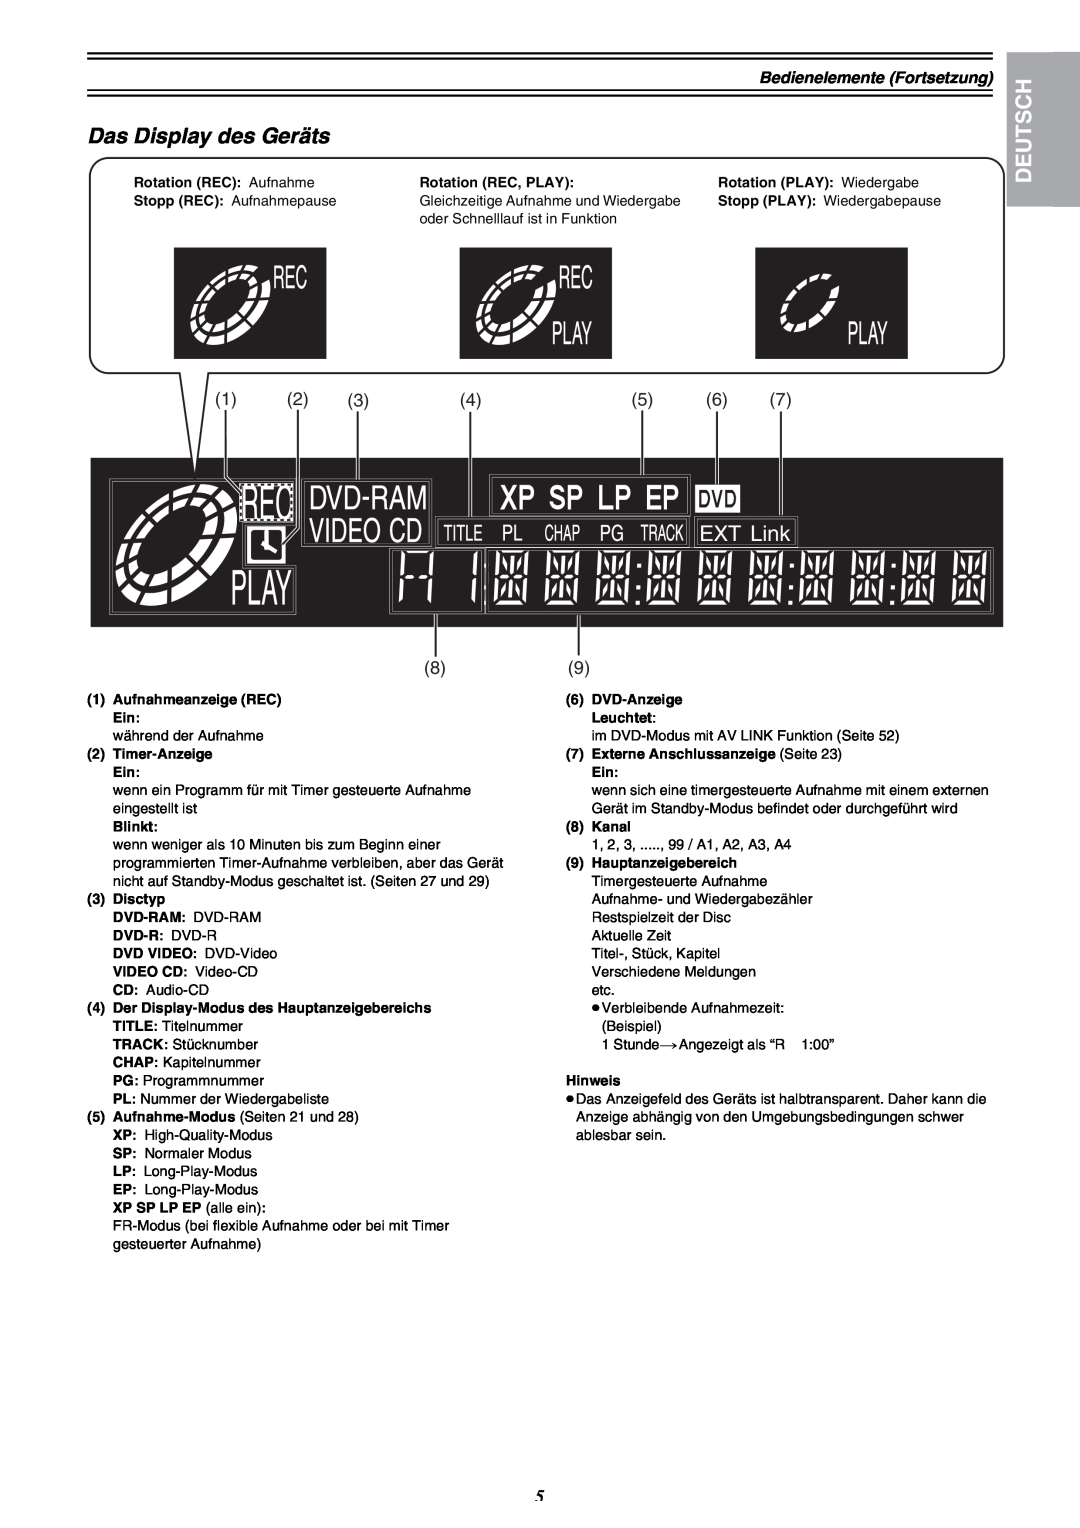 Panasonic DMR-E30 manual Das Display des Geräts, Deutsch, EXT Link 